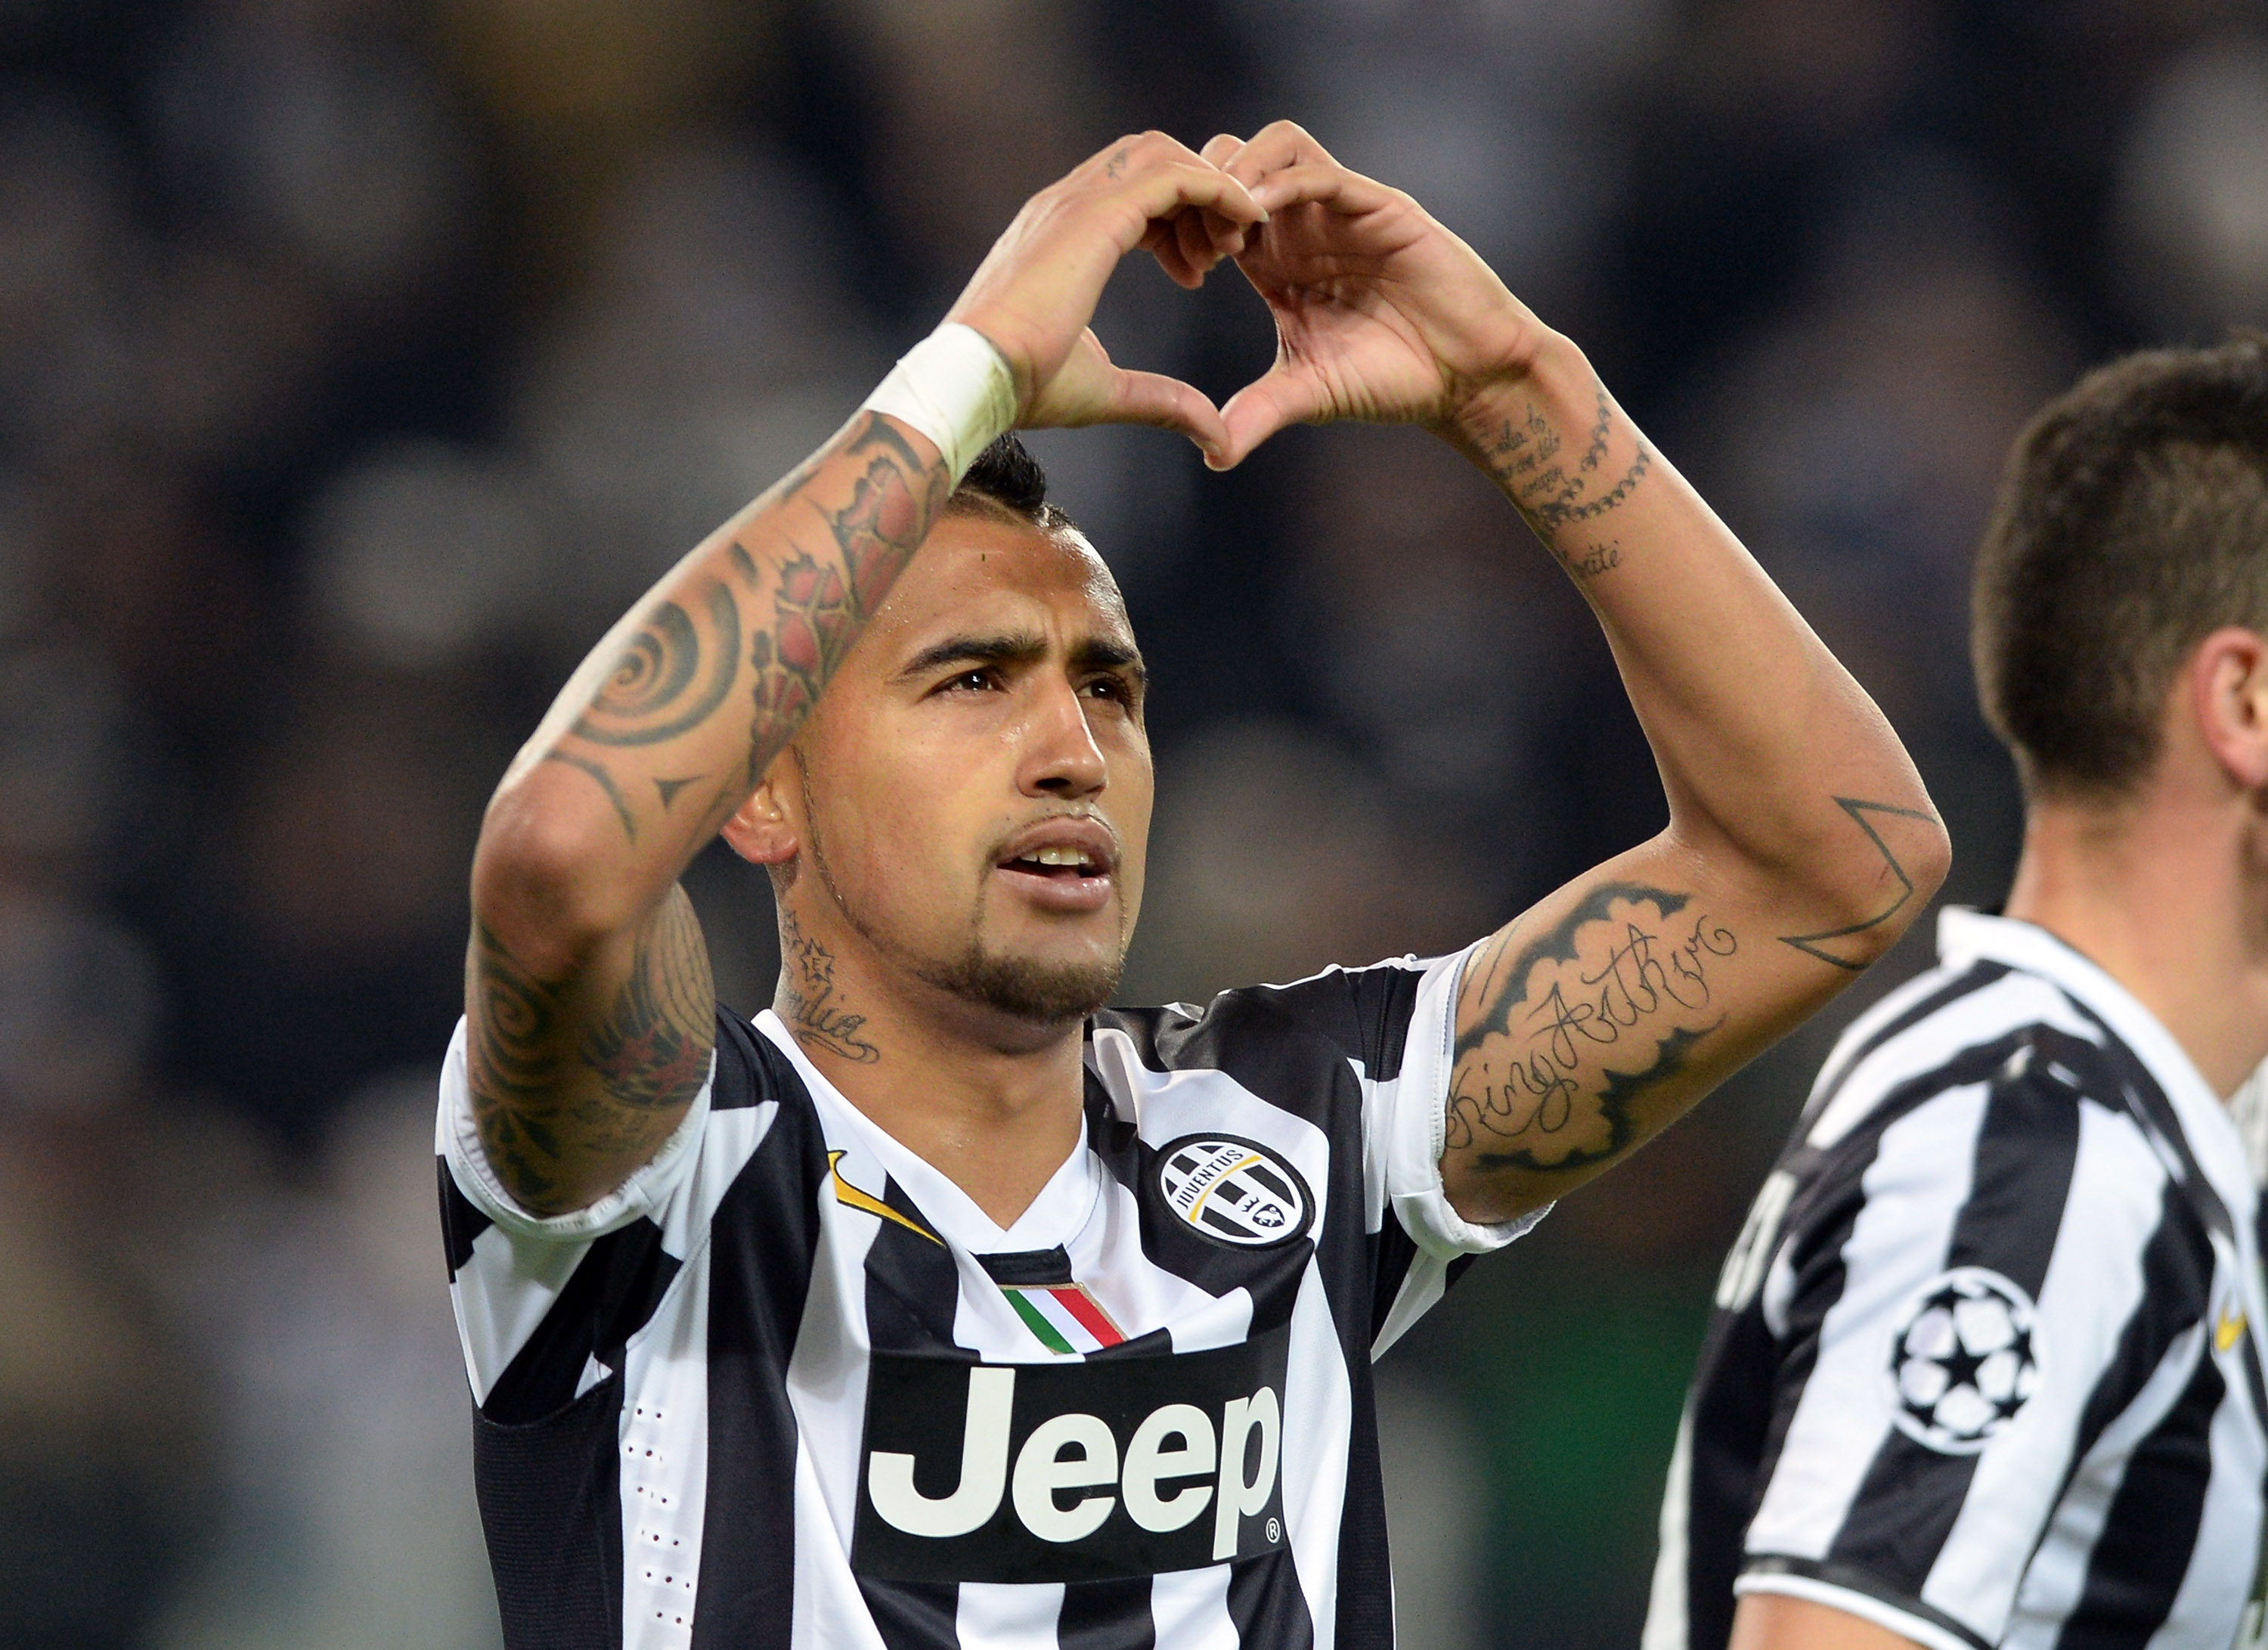 Nhìn lại đội hình Juventus 'bá đạo' lập kỷ lục 102 điểm mùa 2013/2014 - Bóng Đá